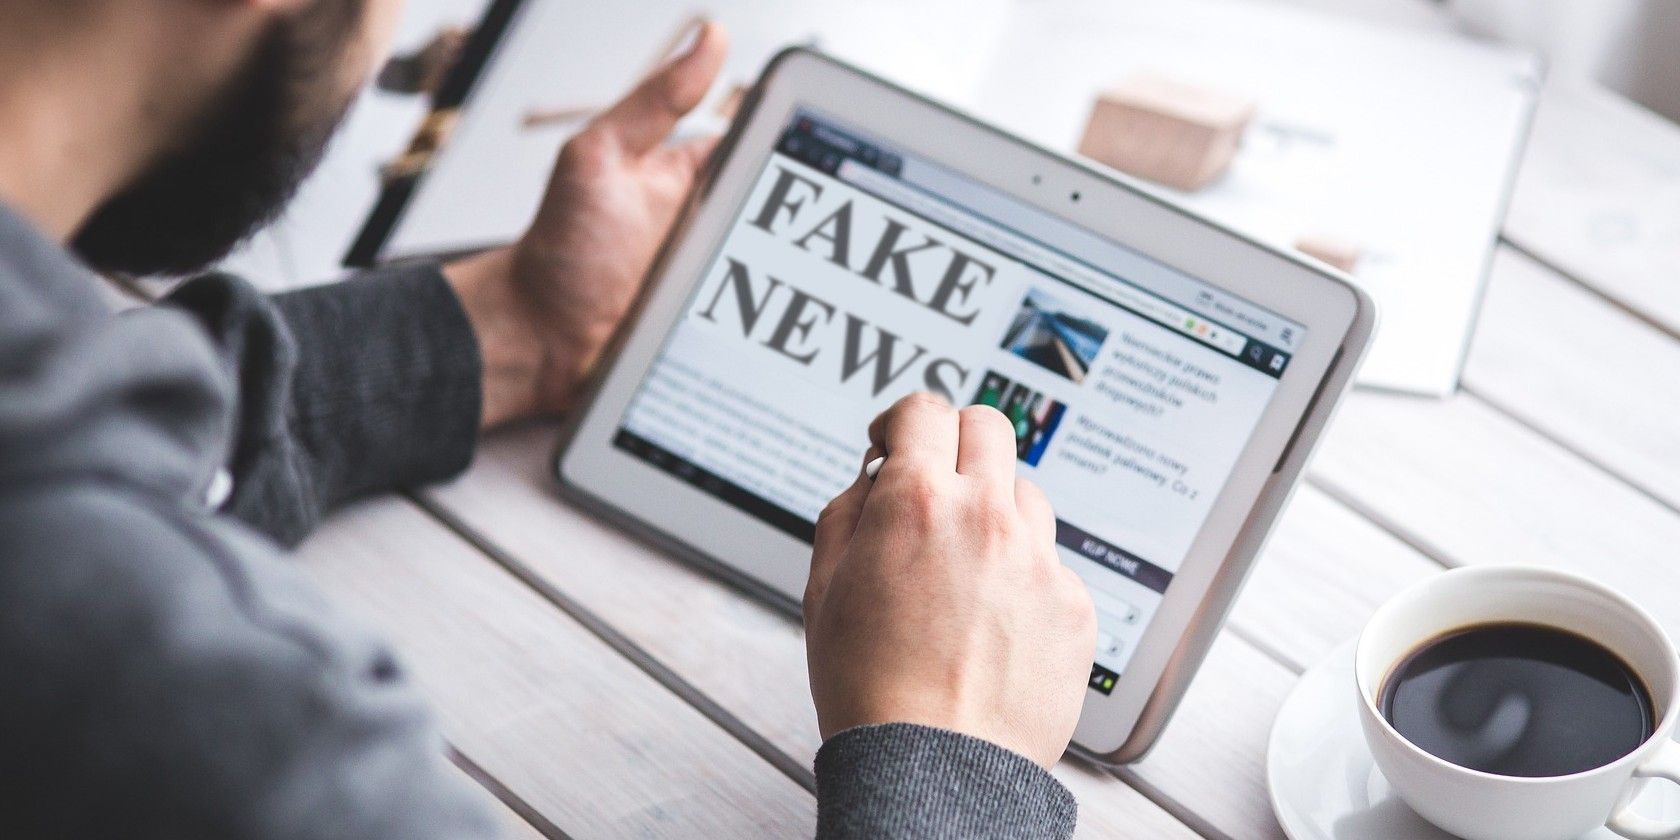 tackling fake news on social media